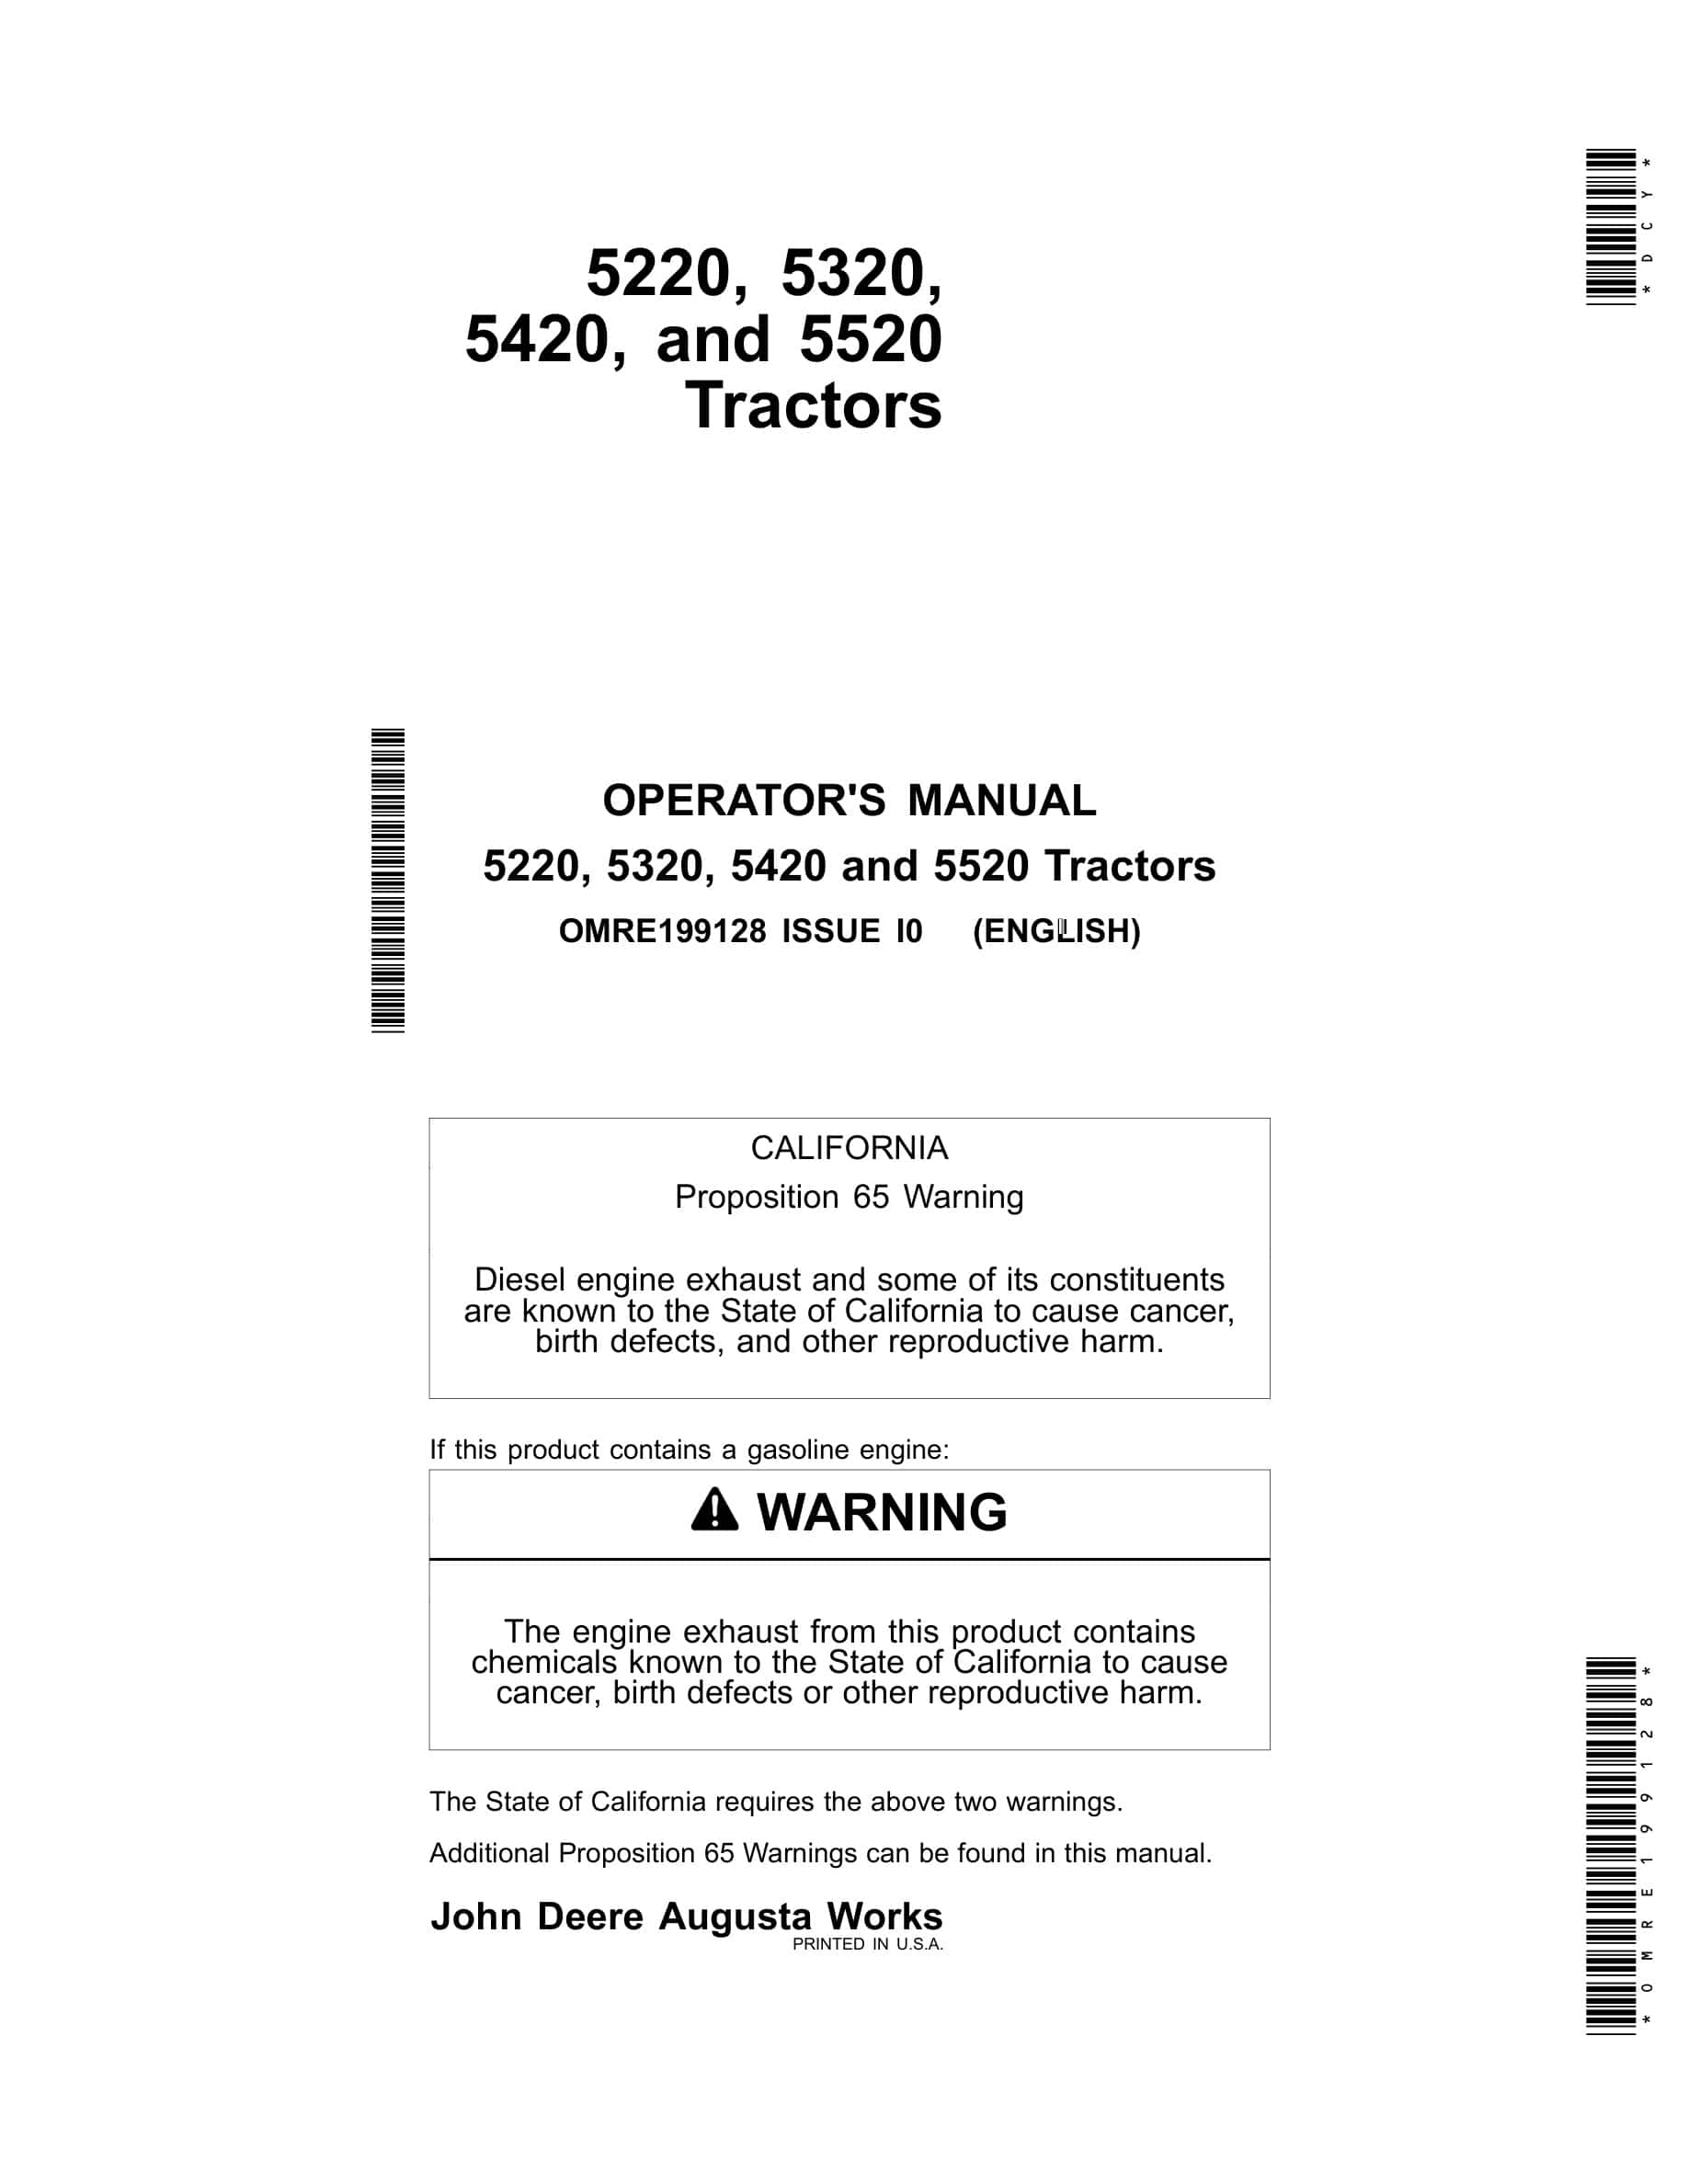 John Deere 5220, 5320, 5420 and 5520 Tractor Operator Manual OMRE199128-1